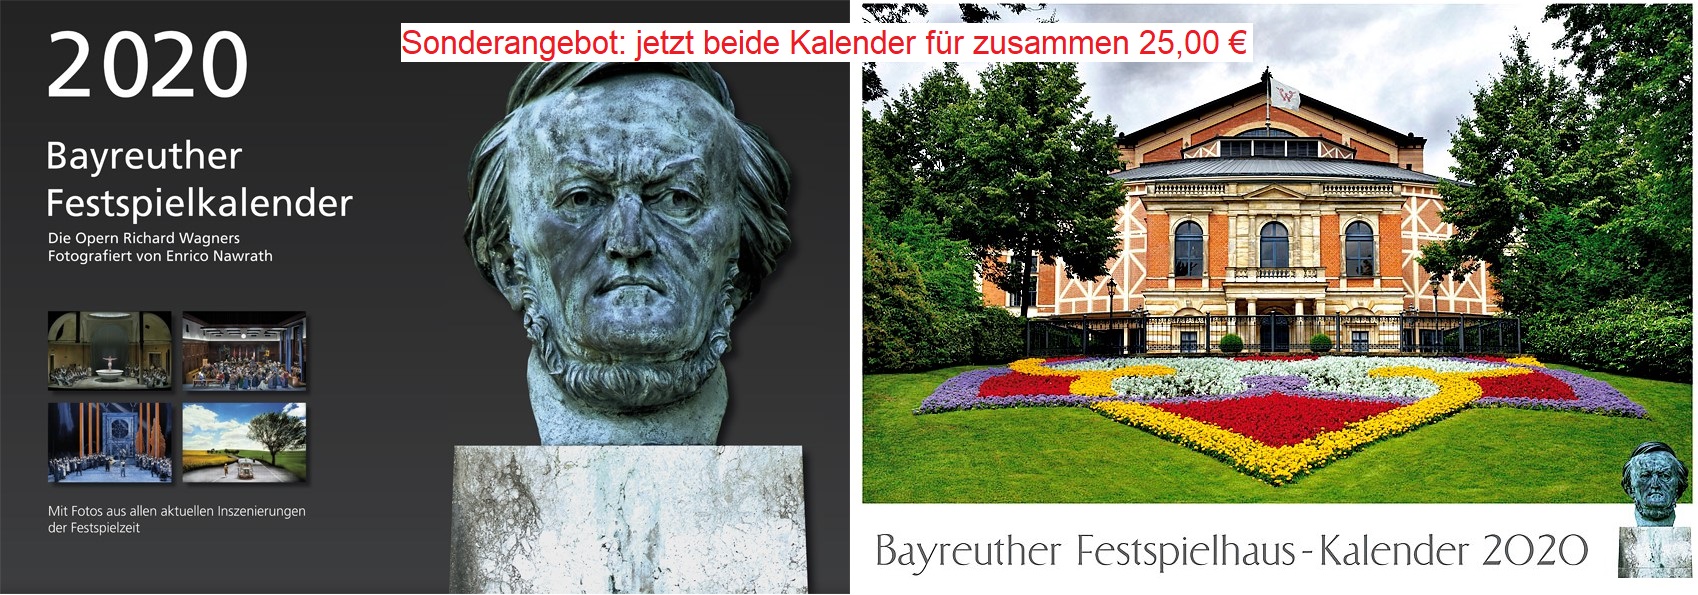 Kalender Bayreuther Festspielkalender 2020 + Bayreuther Festspielhaus-Kalender 2020